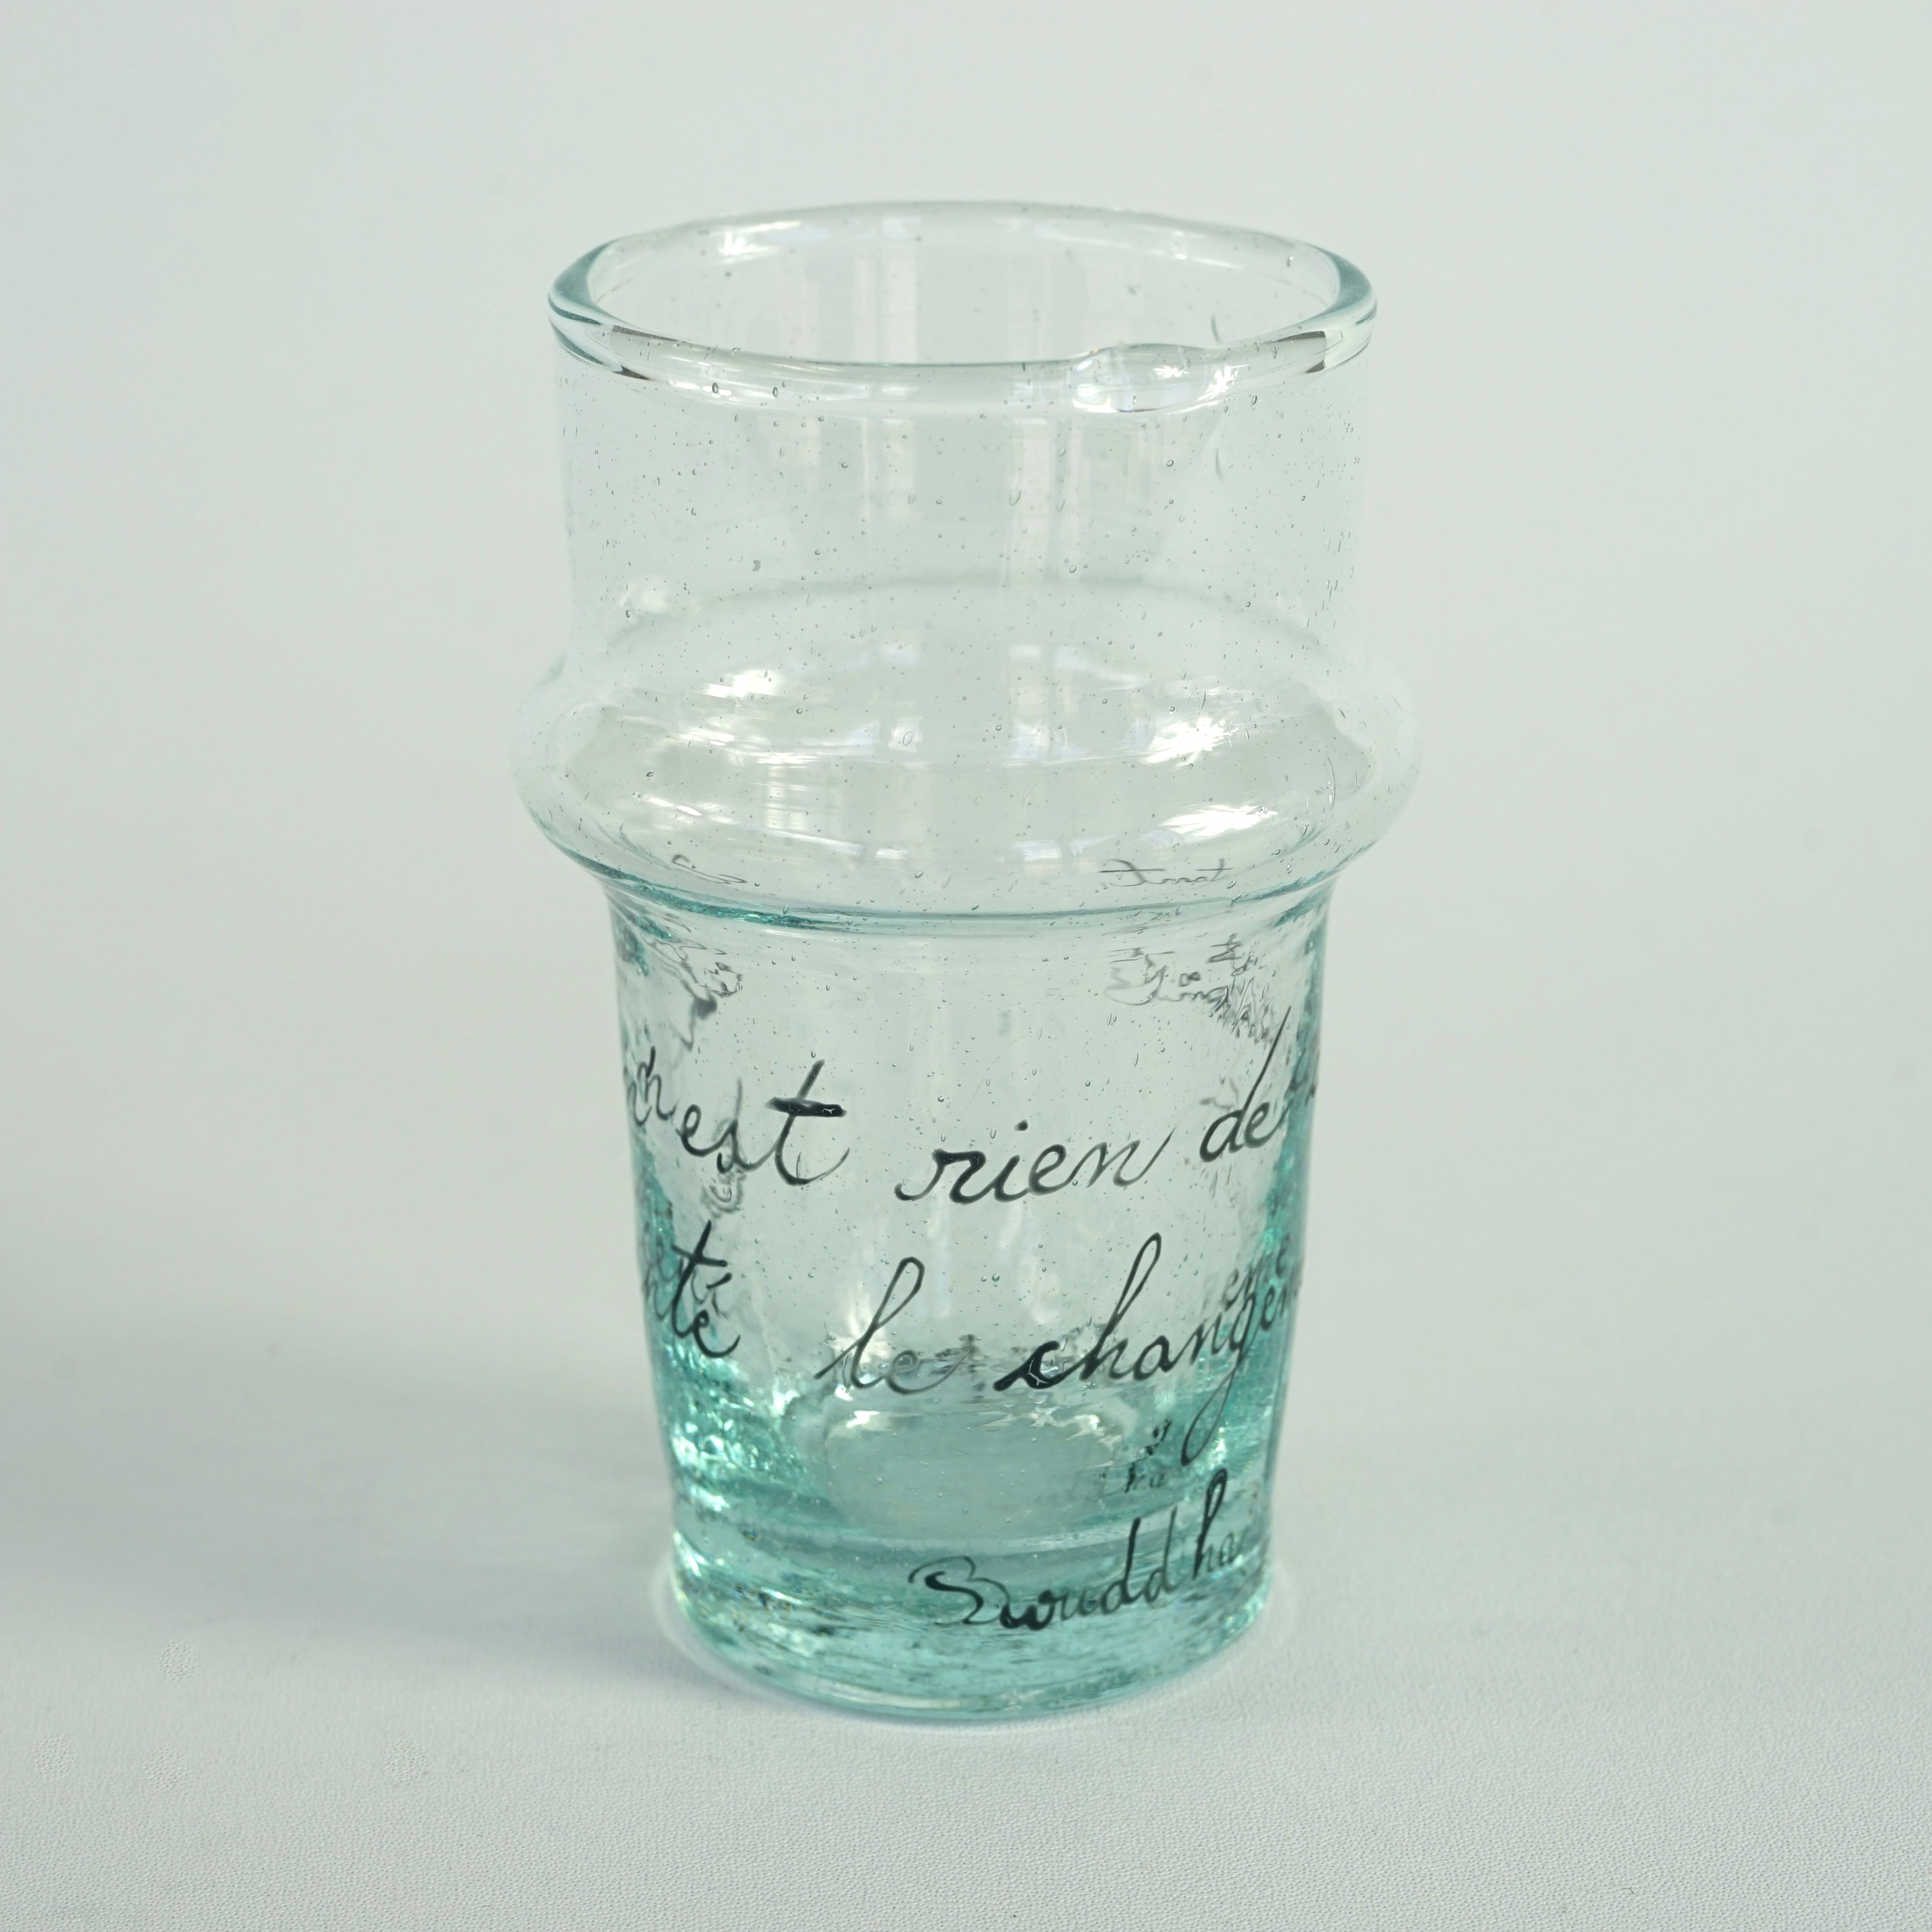 Gerecycleerd handgeschilderd glas met Boudha quote